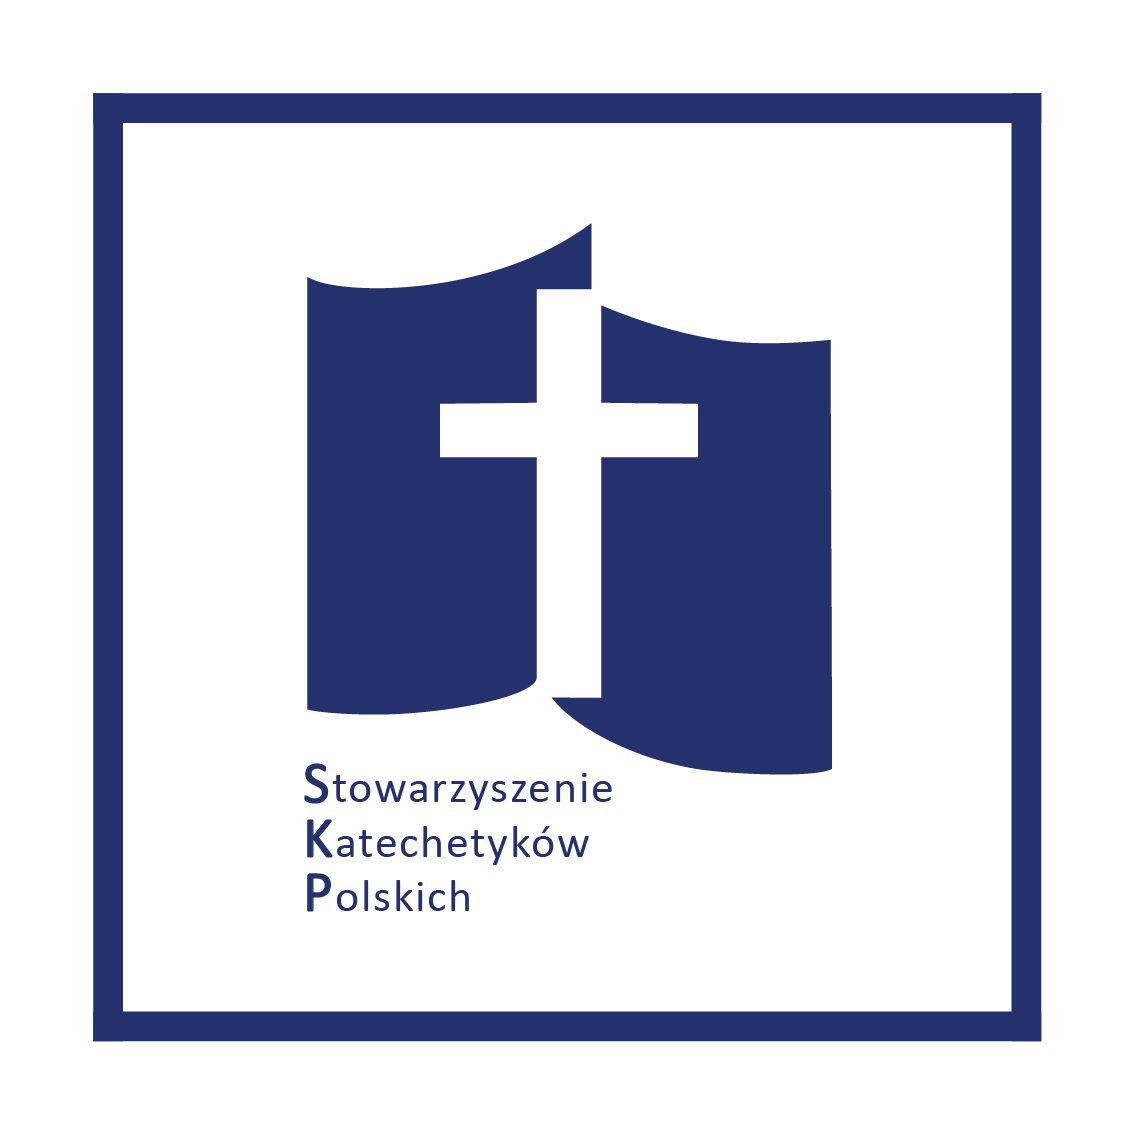 Stowarzyszenie Katechetyków Polskich